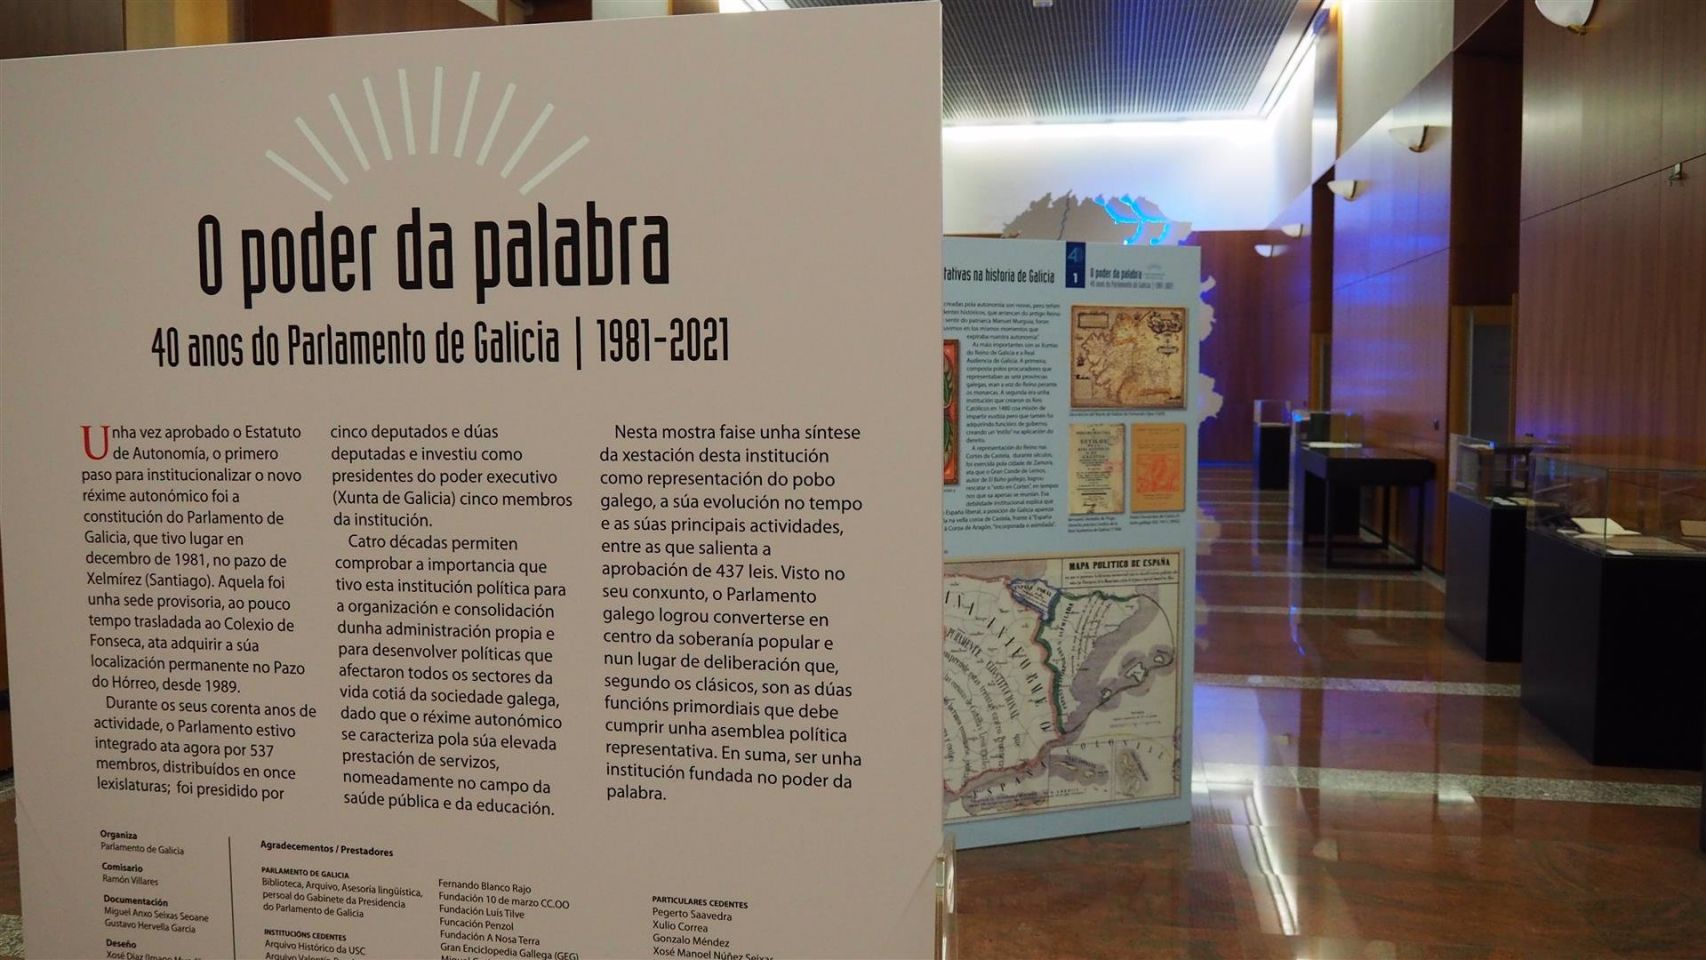 Imagen de la exposición sobre los 40 años de historia del Parlamento de Galicia.